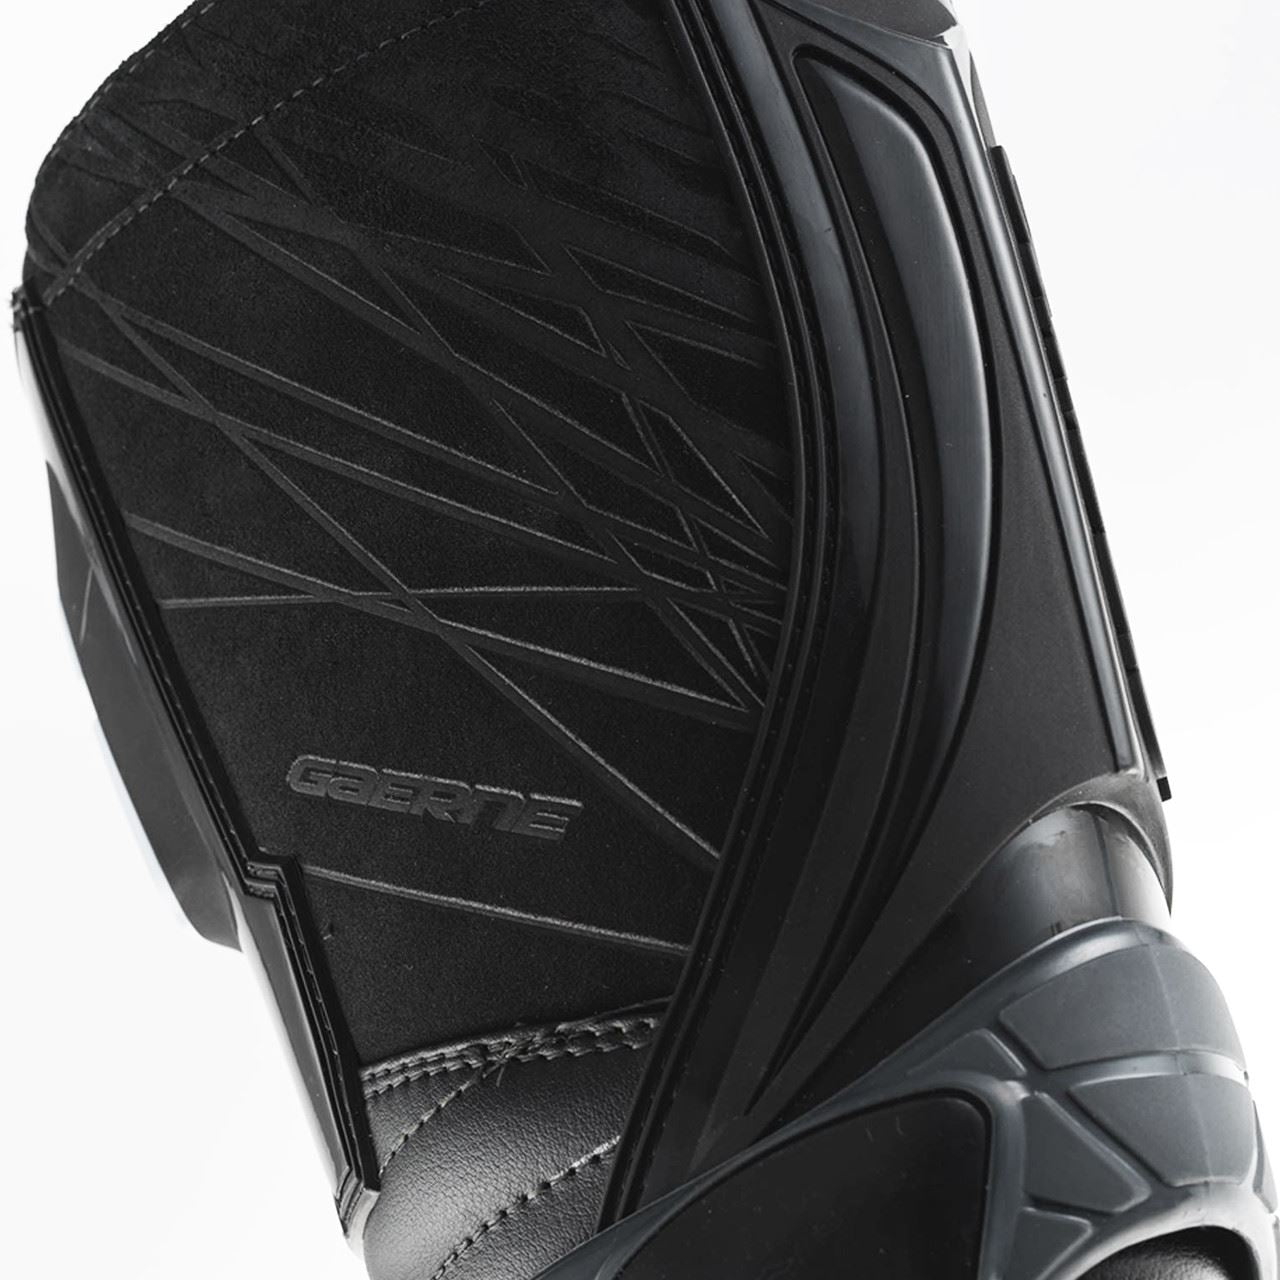 Gaerne Fastback Motocross Boots Black